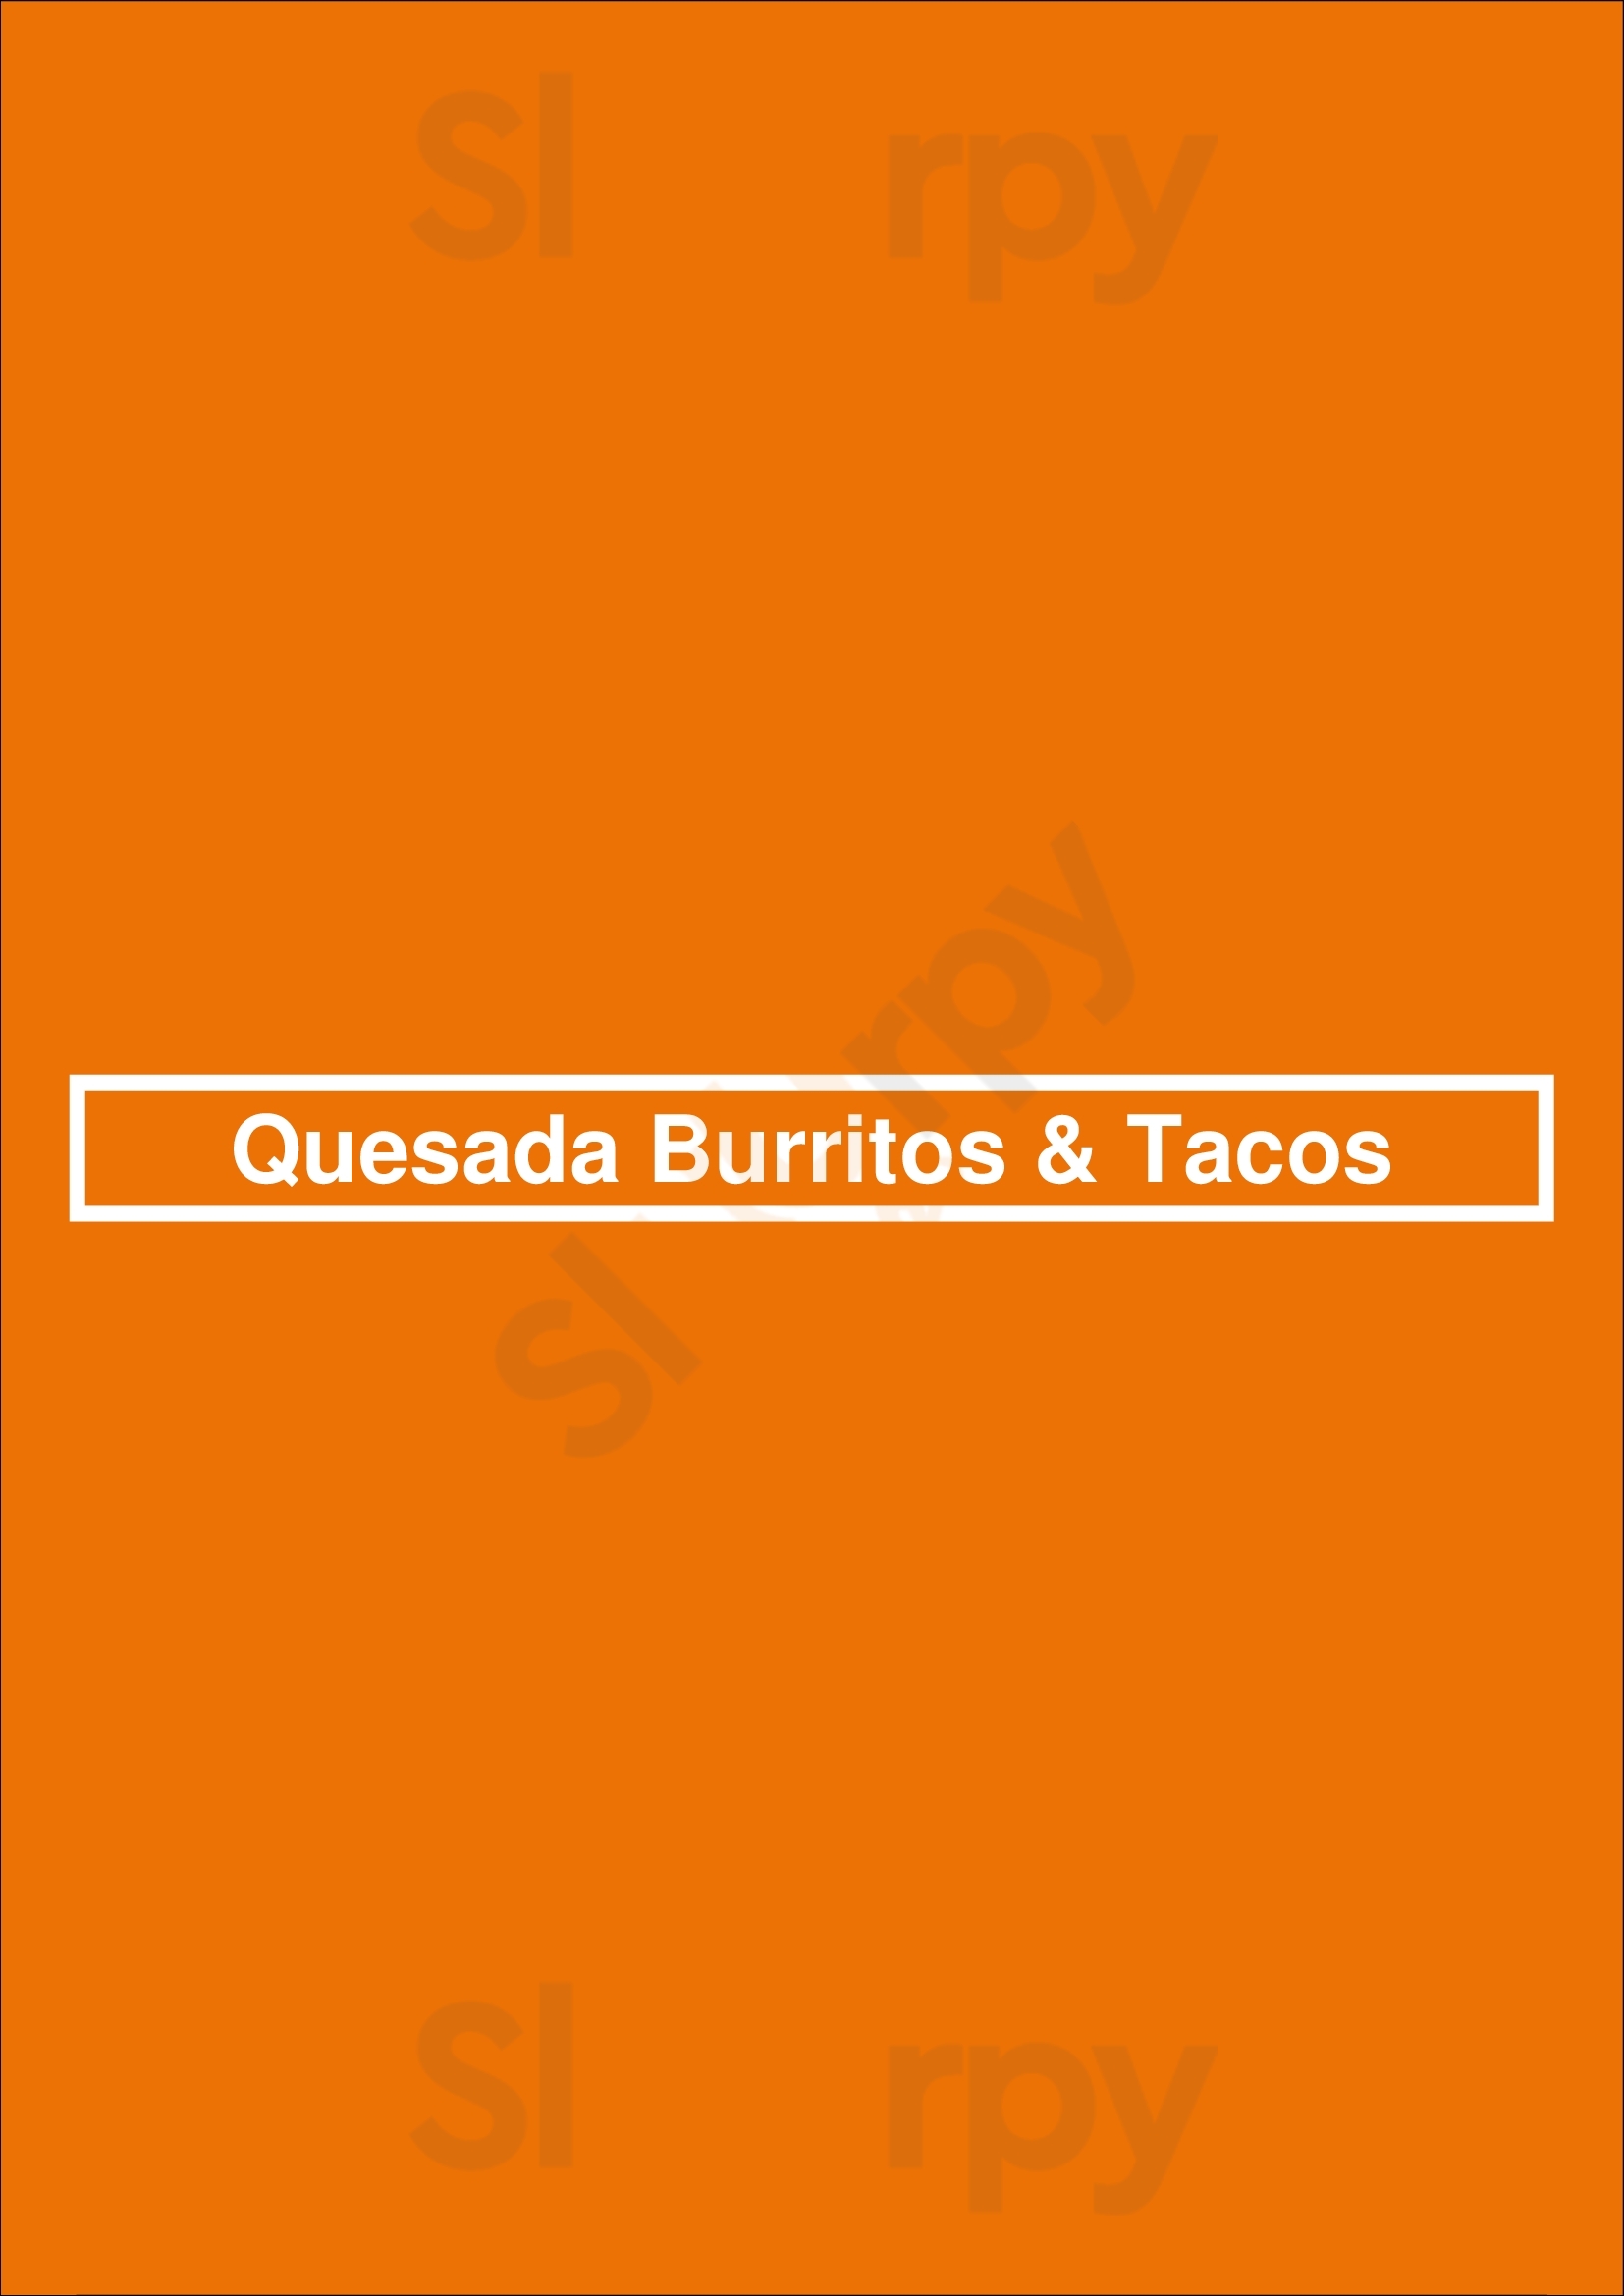 Quesada Burritos & Tacos Stittsville Menu - 1